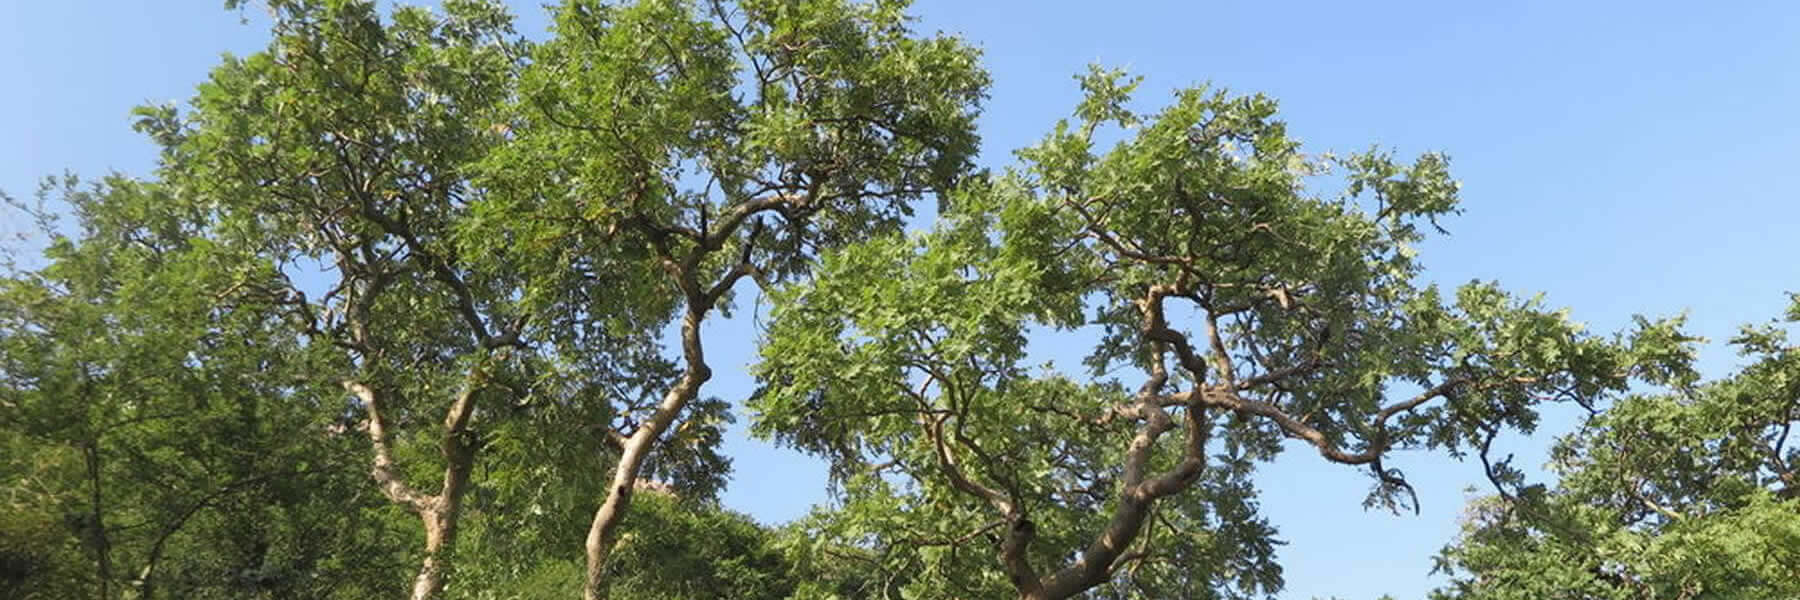 Weihrauch Indien Baum